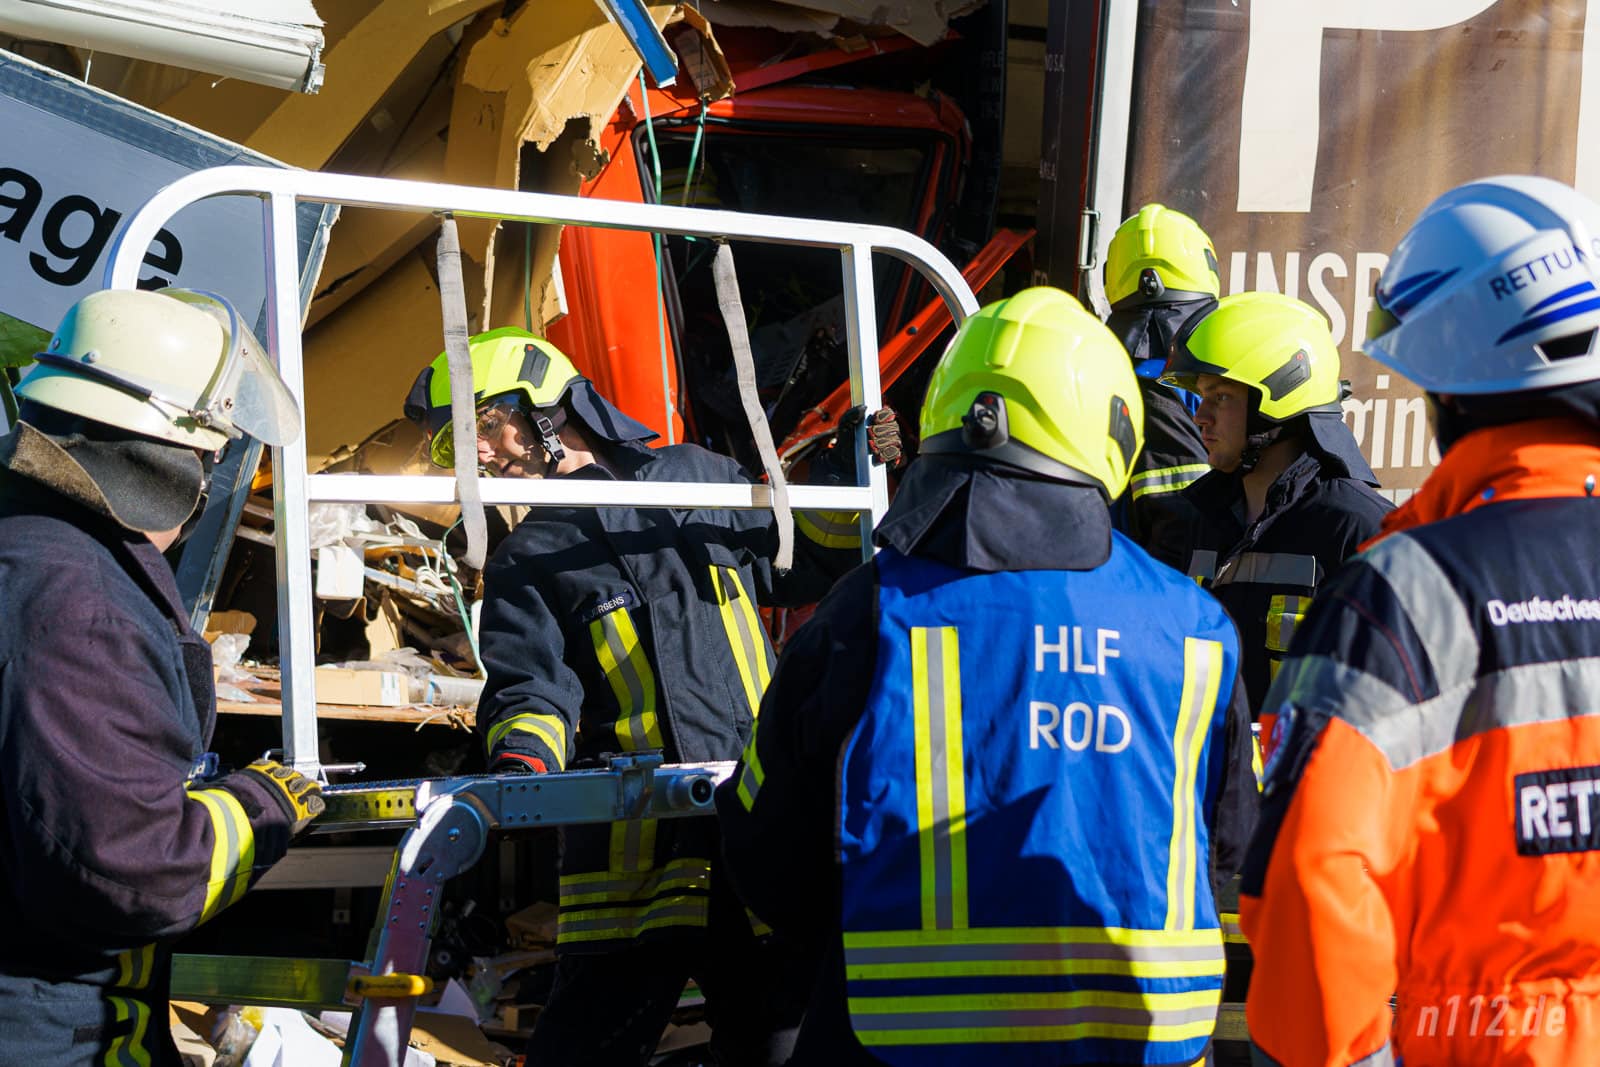 Helfer bauen eine Rettungsbühne auf, um auf der Ebene der Fahrerkabine arbeiten zu können (Foto: n112.de/Stefan Hillen)